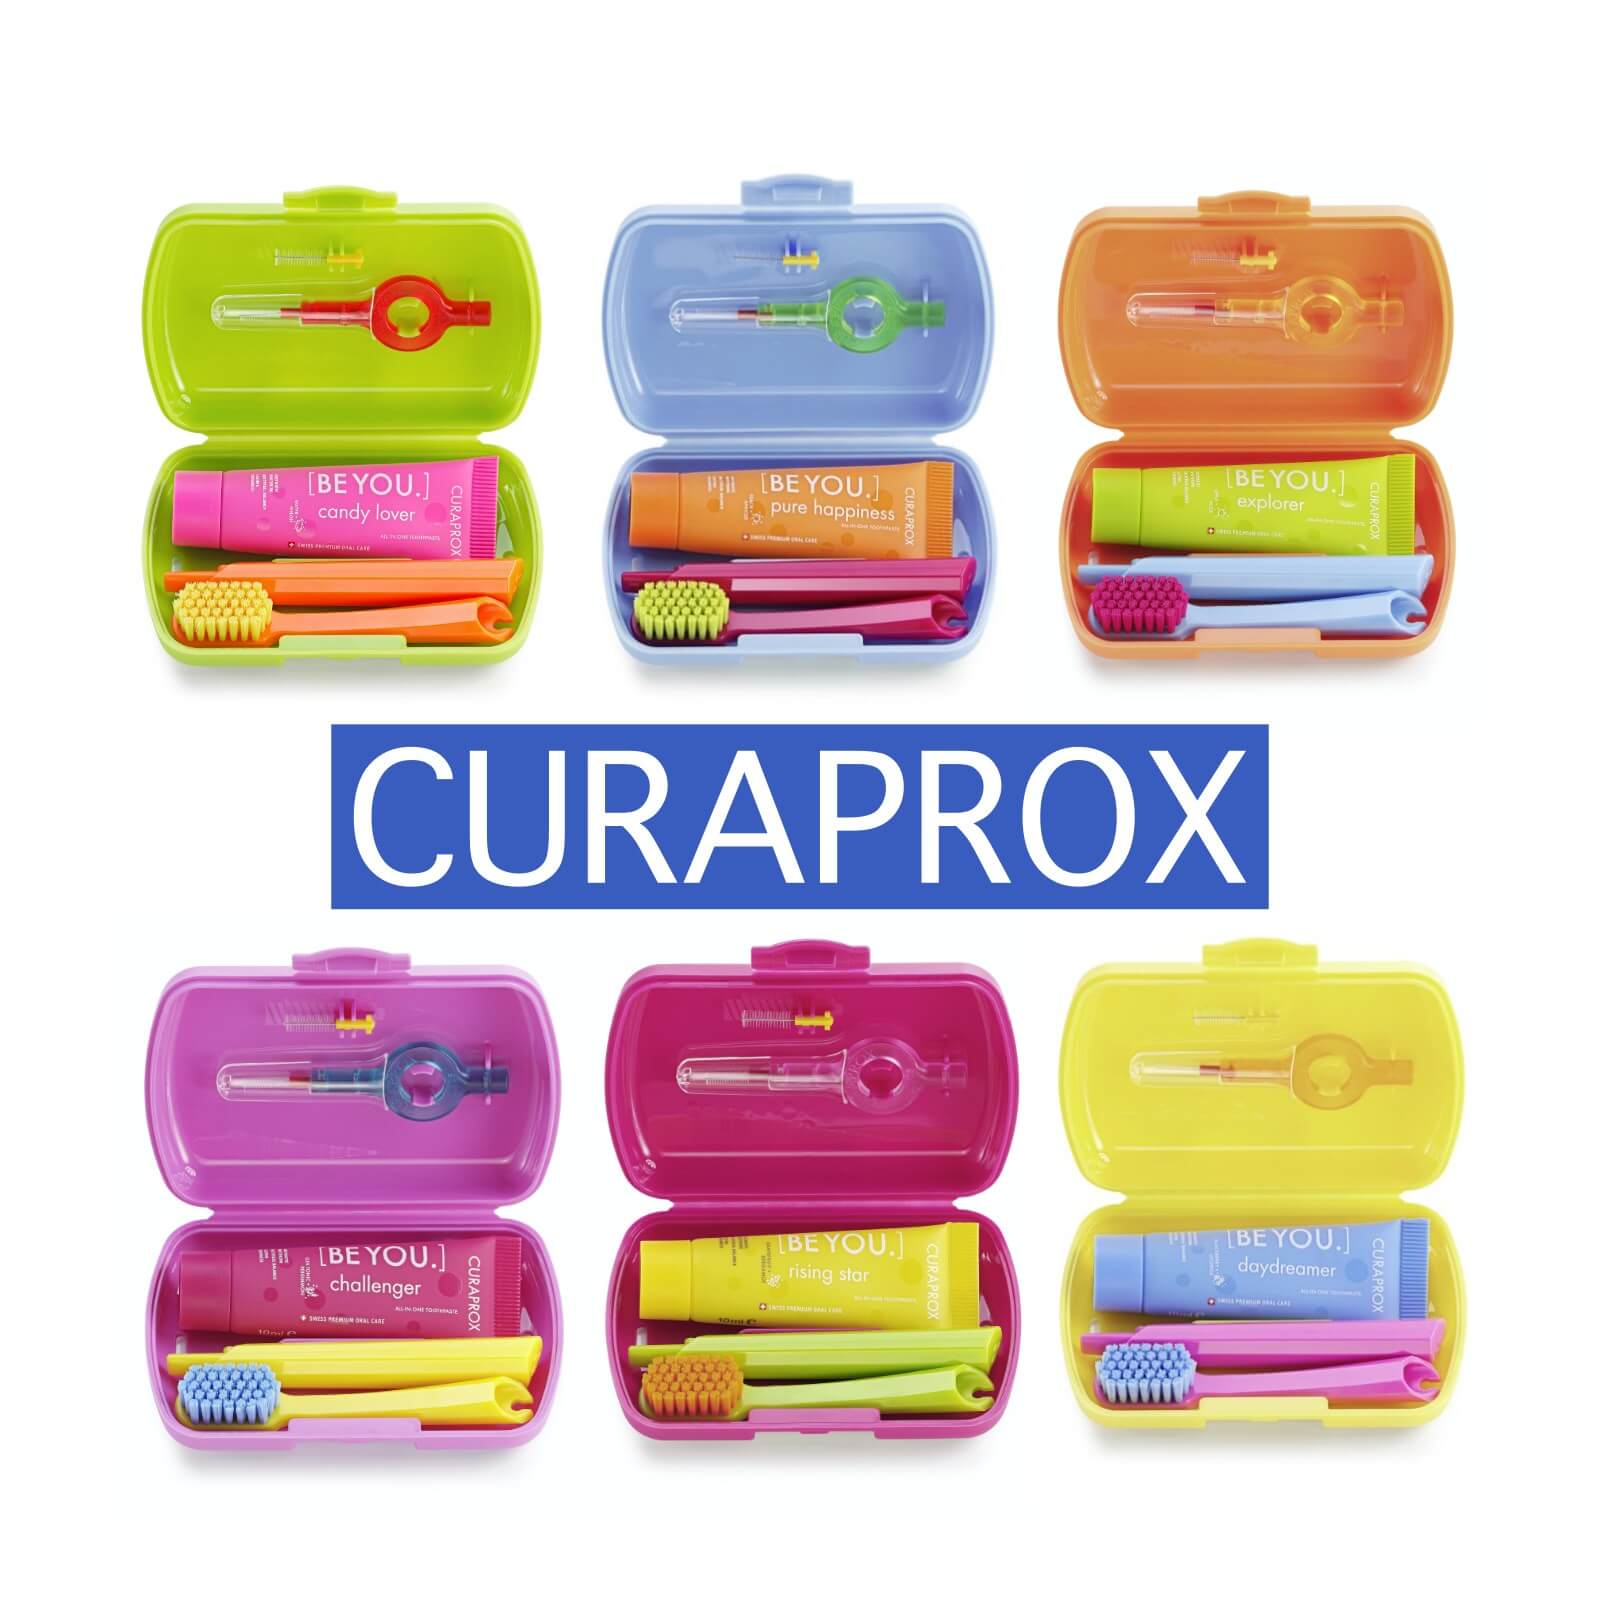 Curaprox - Stylisch bunte und innovative Zahnpflege - Alles für die perfekte Mundpflege 1